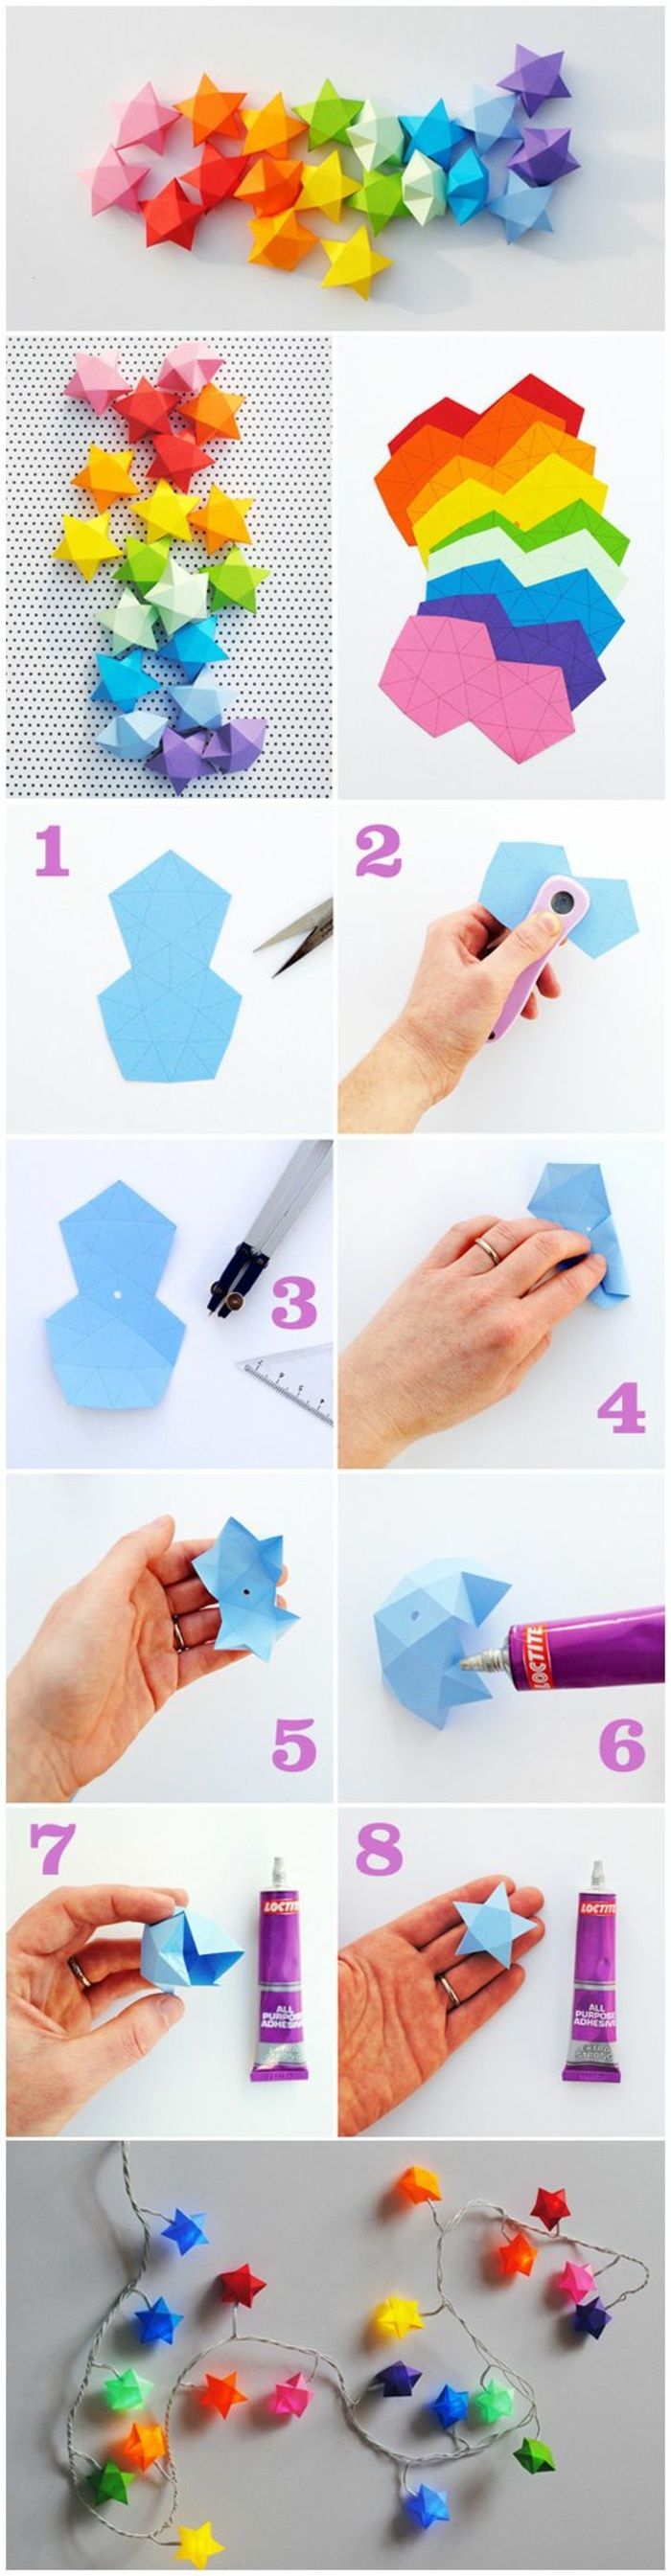 maak krans alleen, maak sterretjes van kleurrijk papier, lijm